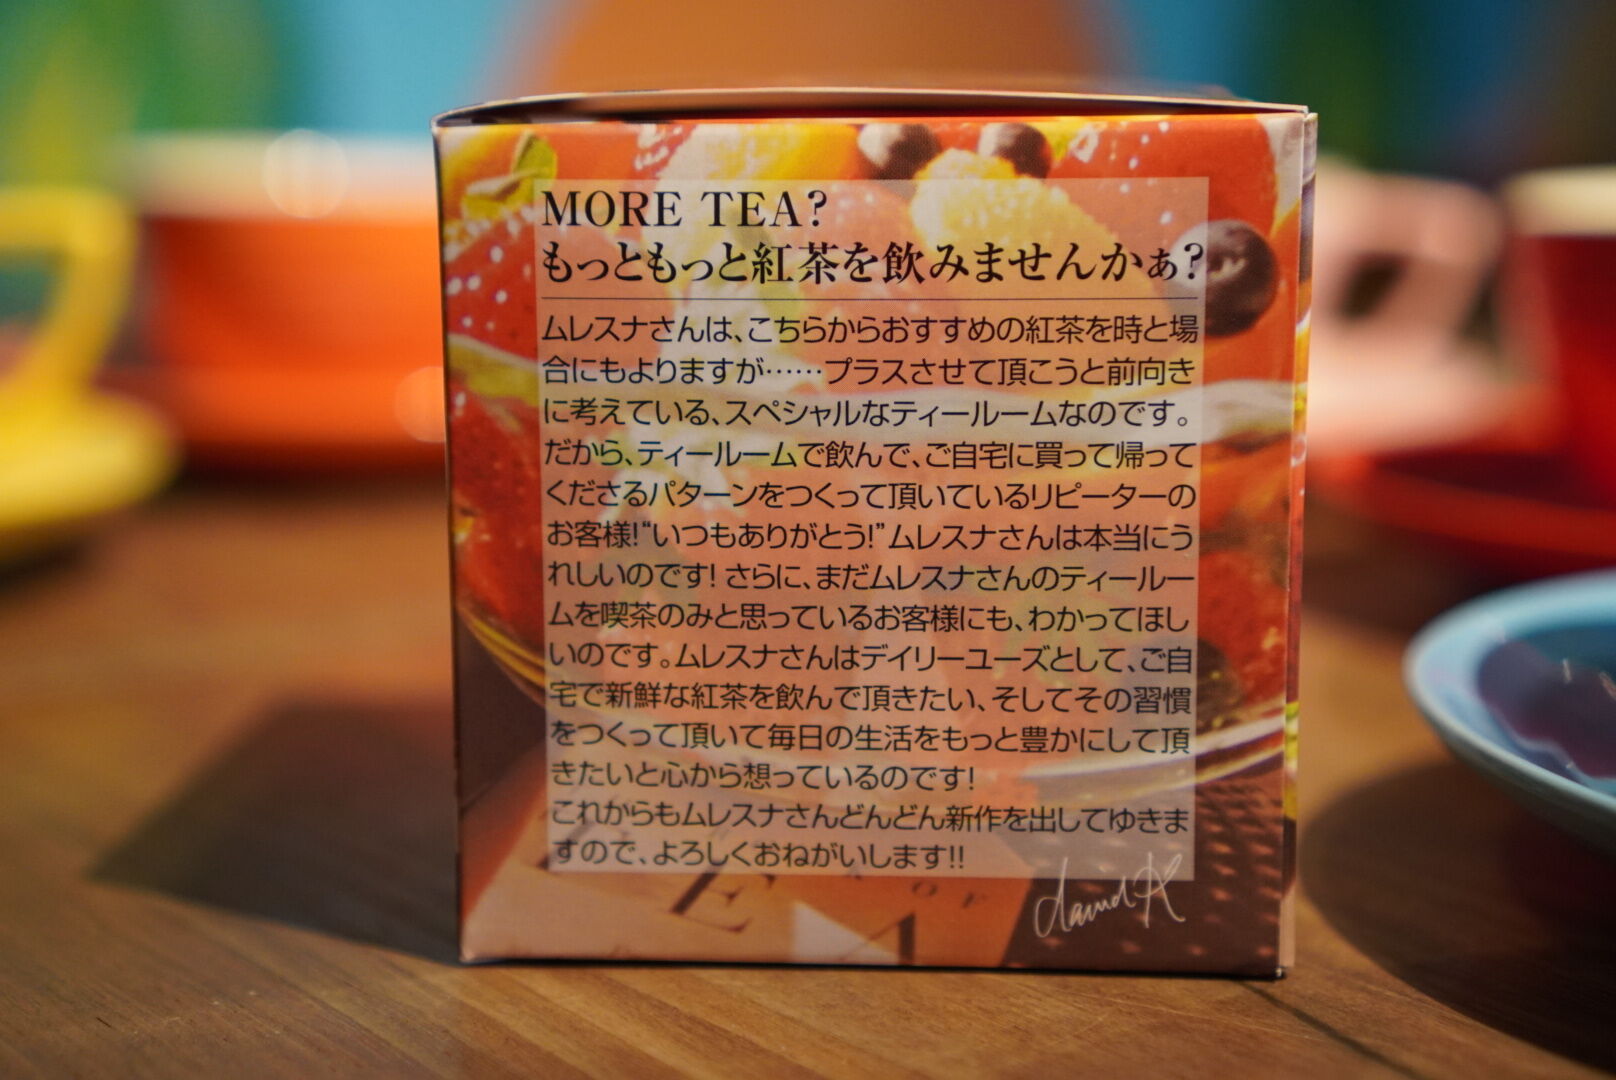 紅茶 ムレスナティー 4トロピカルフルーツ 果実が大好き!きみとぼくだから･･･